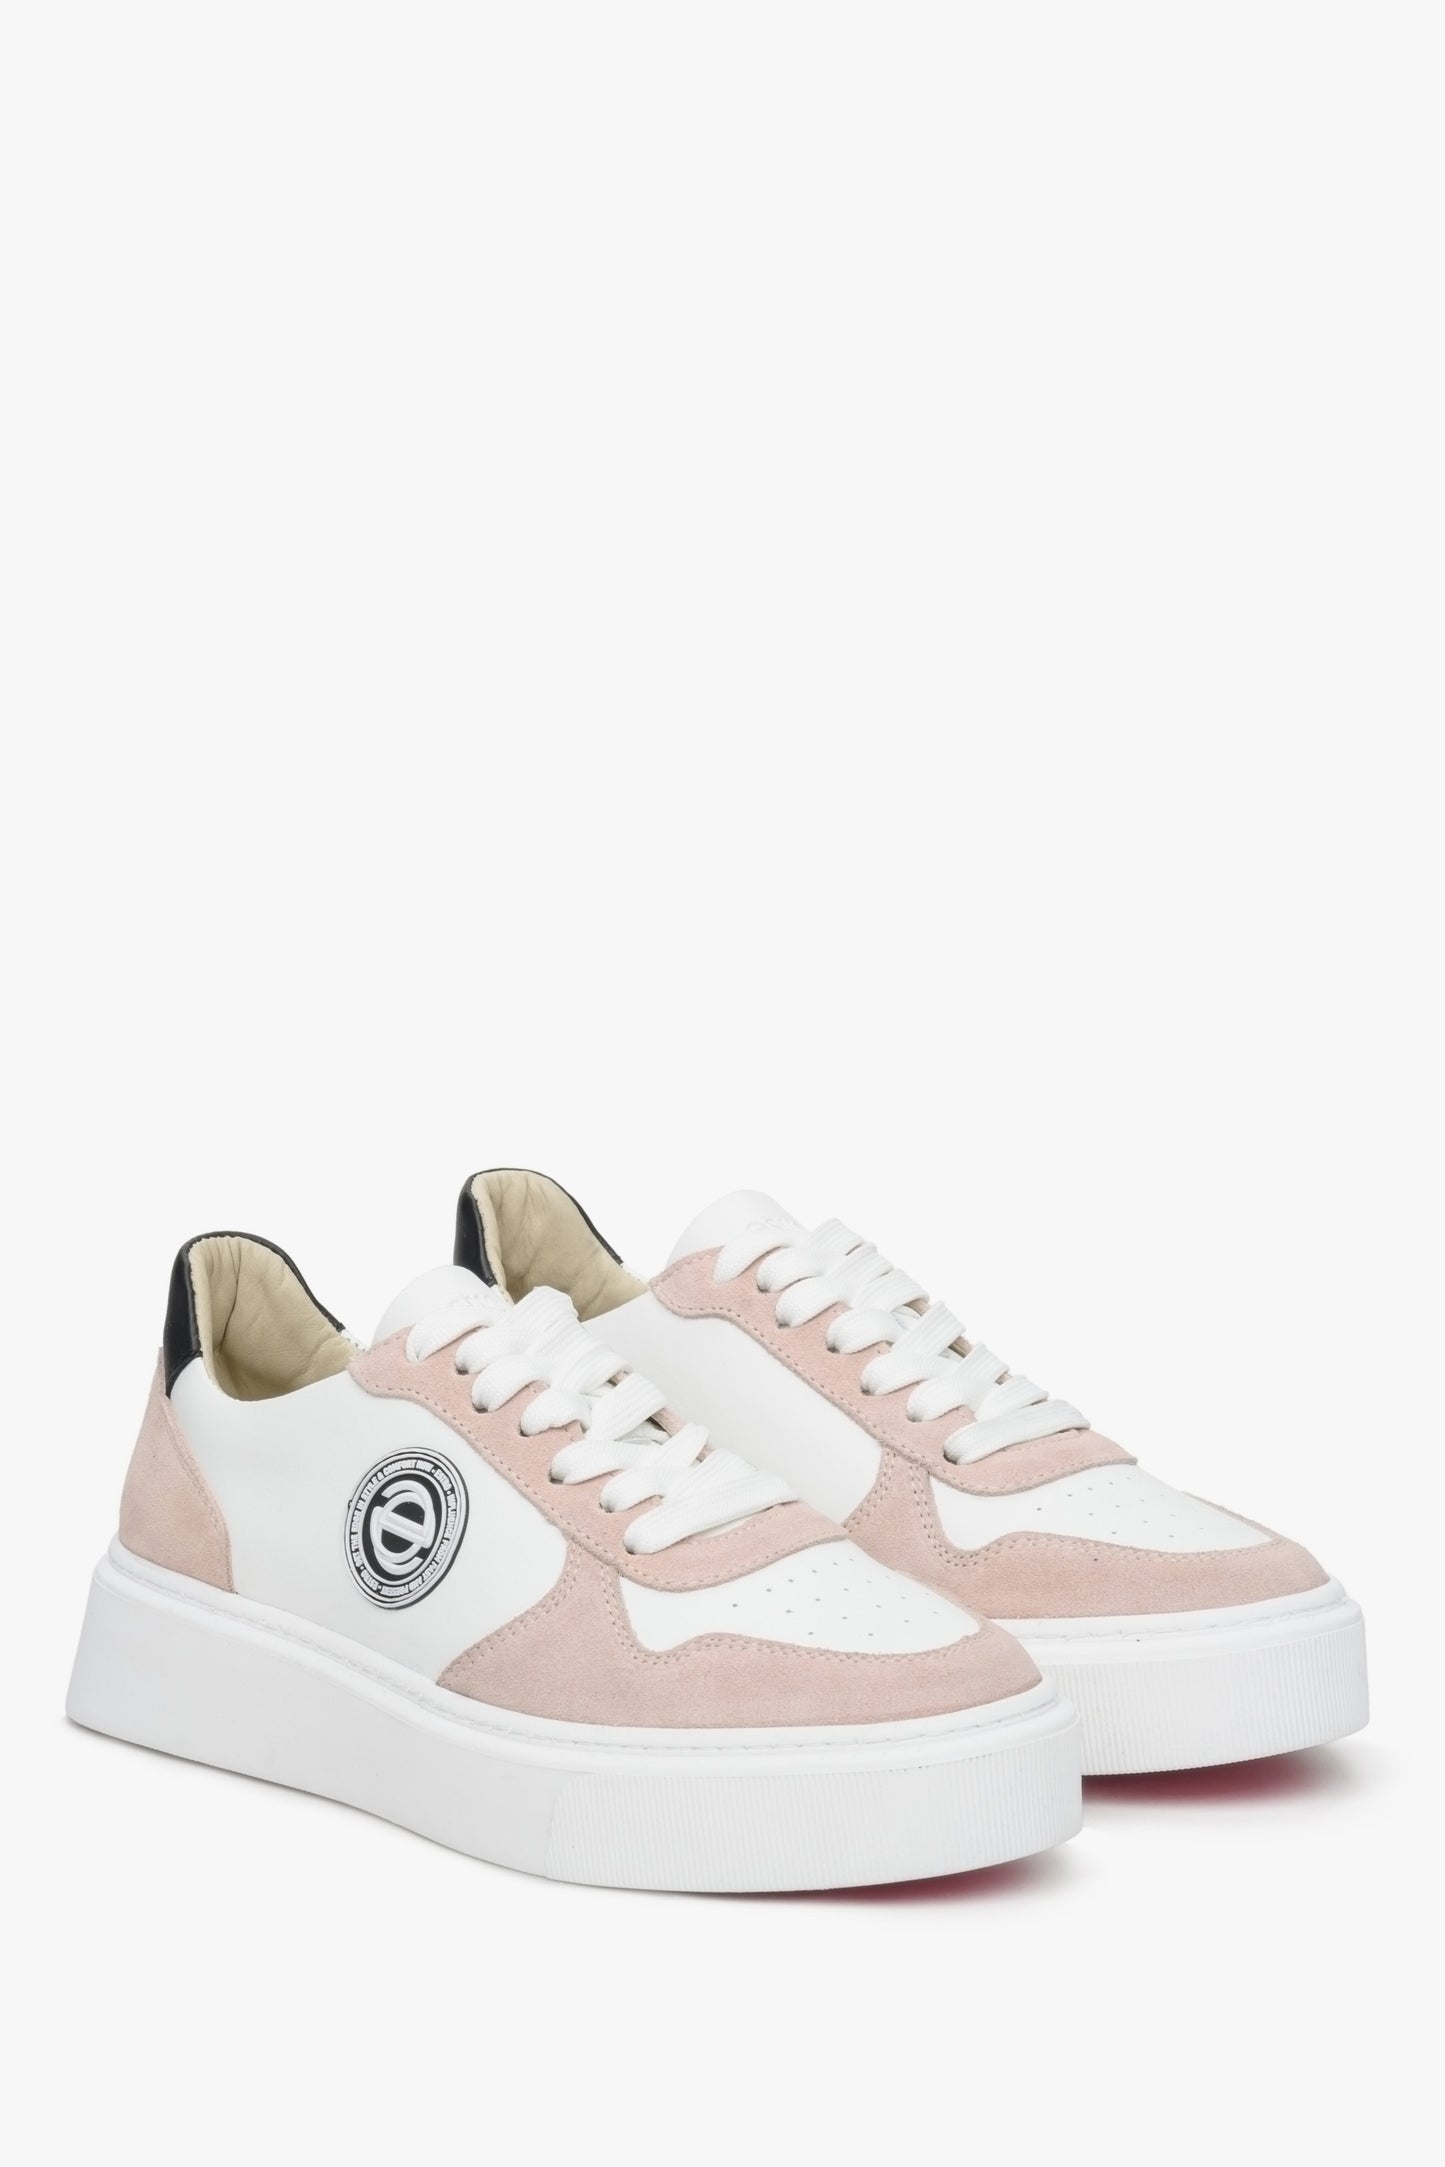 Sneakersy damskie z weluru i skóry naturalnej Estro ze sznurowaniem w kolorze biało-różowym.